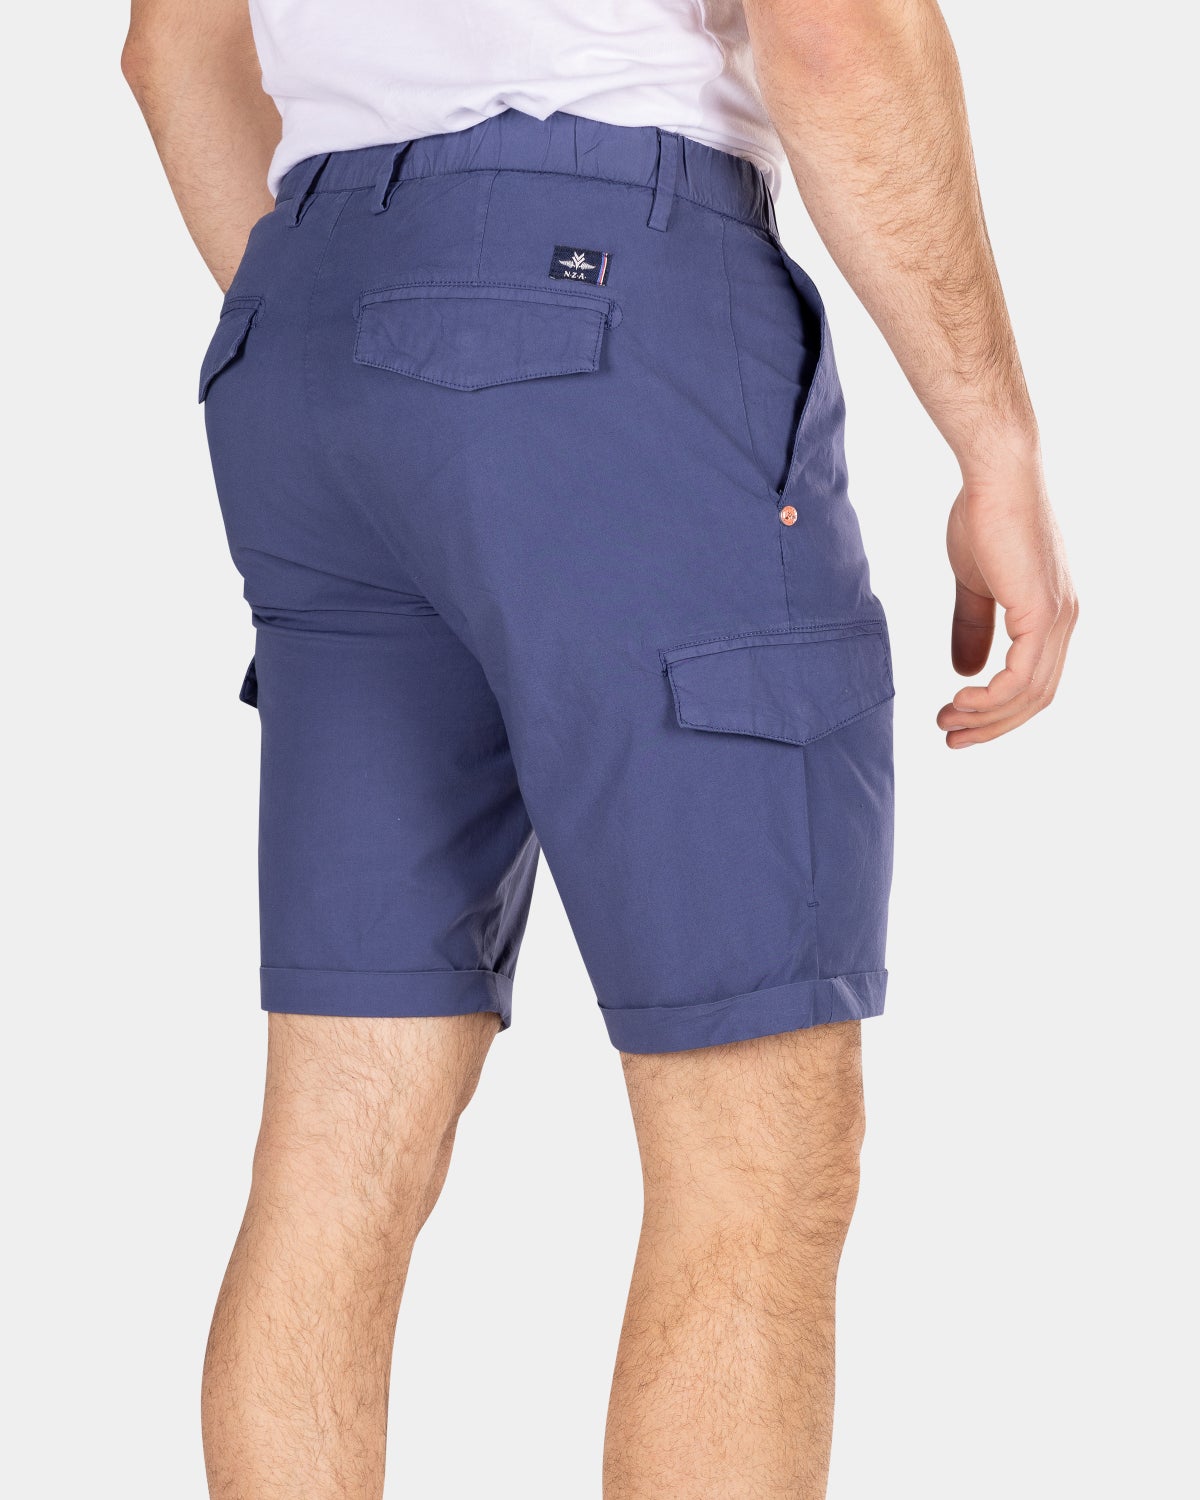 Short cargo pants - Dusk Navy